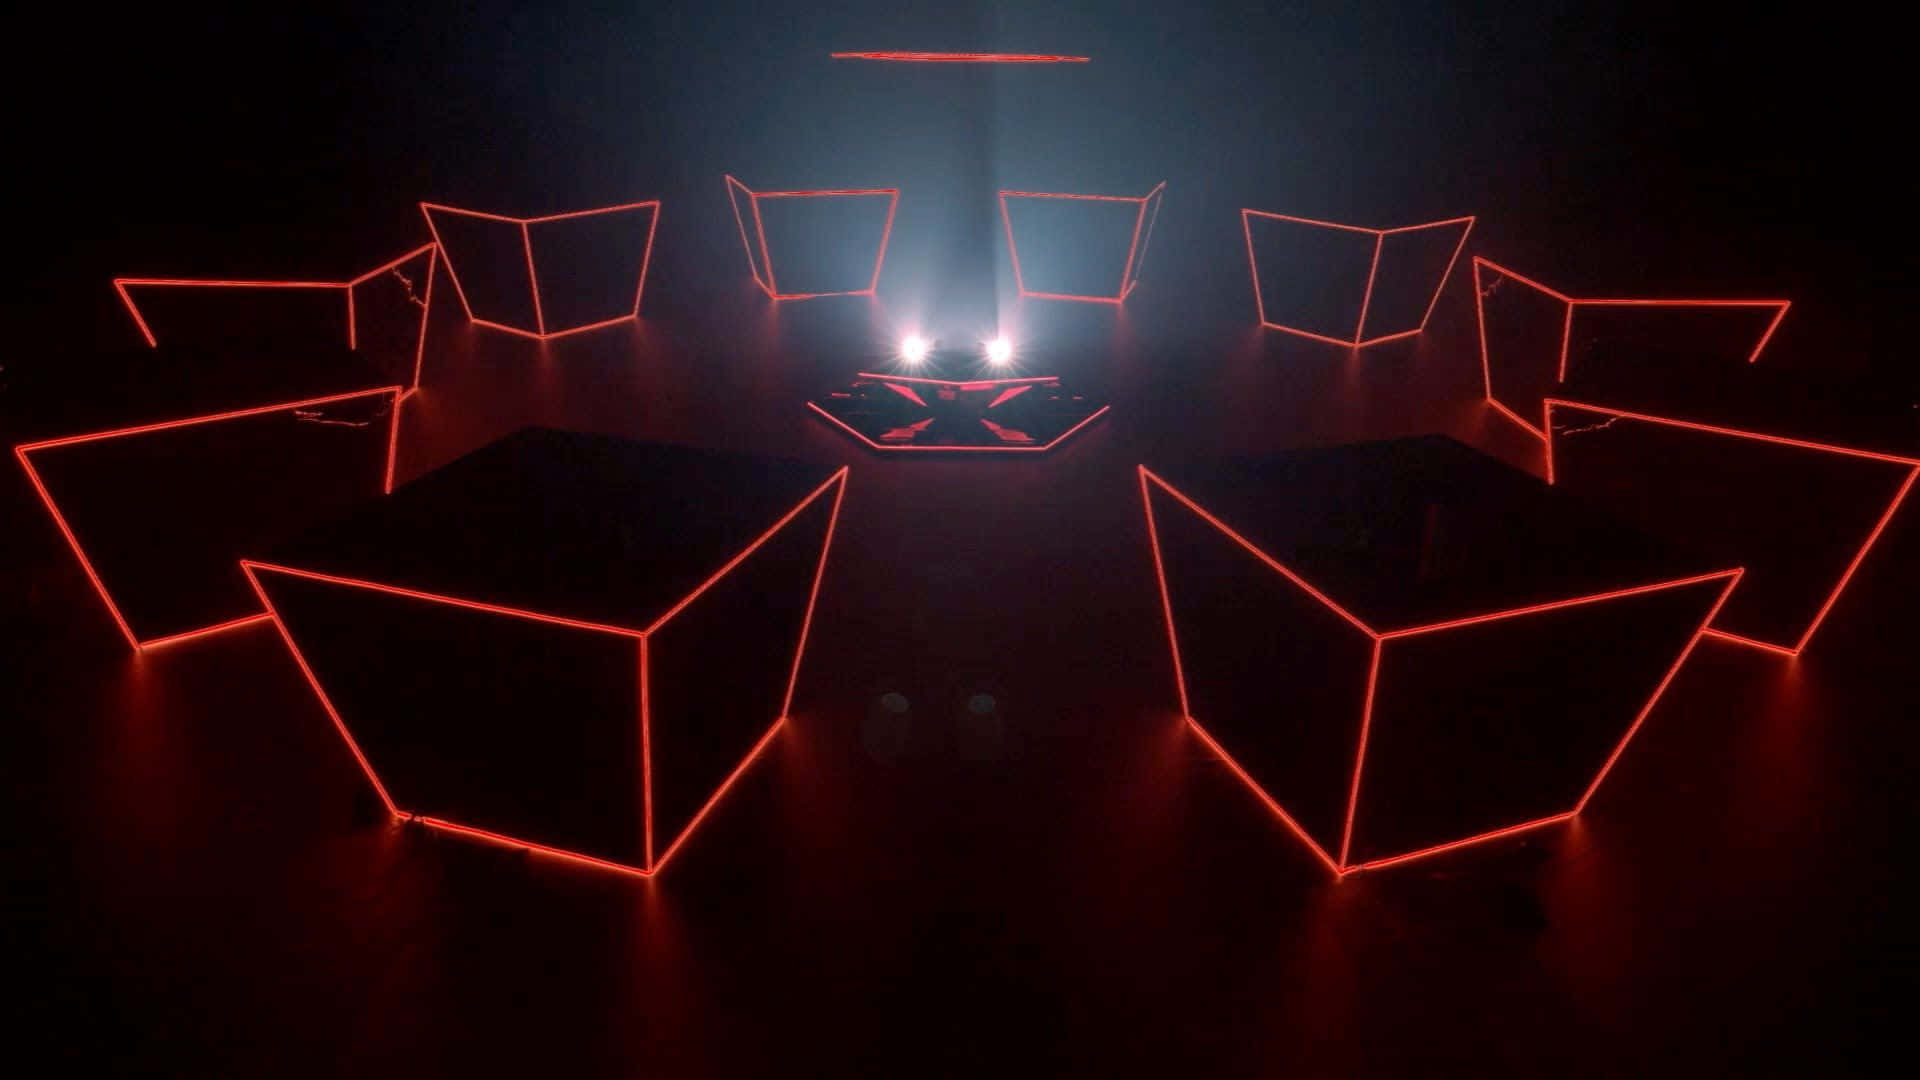 Ungrupo De Cubos Rojos En Una Habitación Oscura Fondo de pantalla